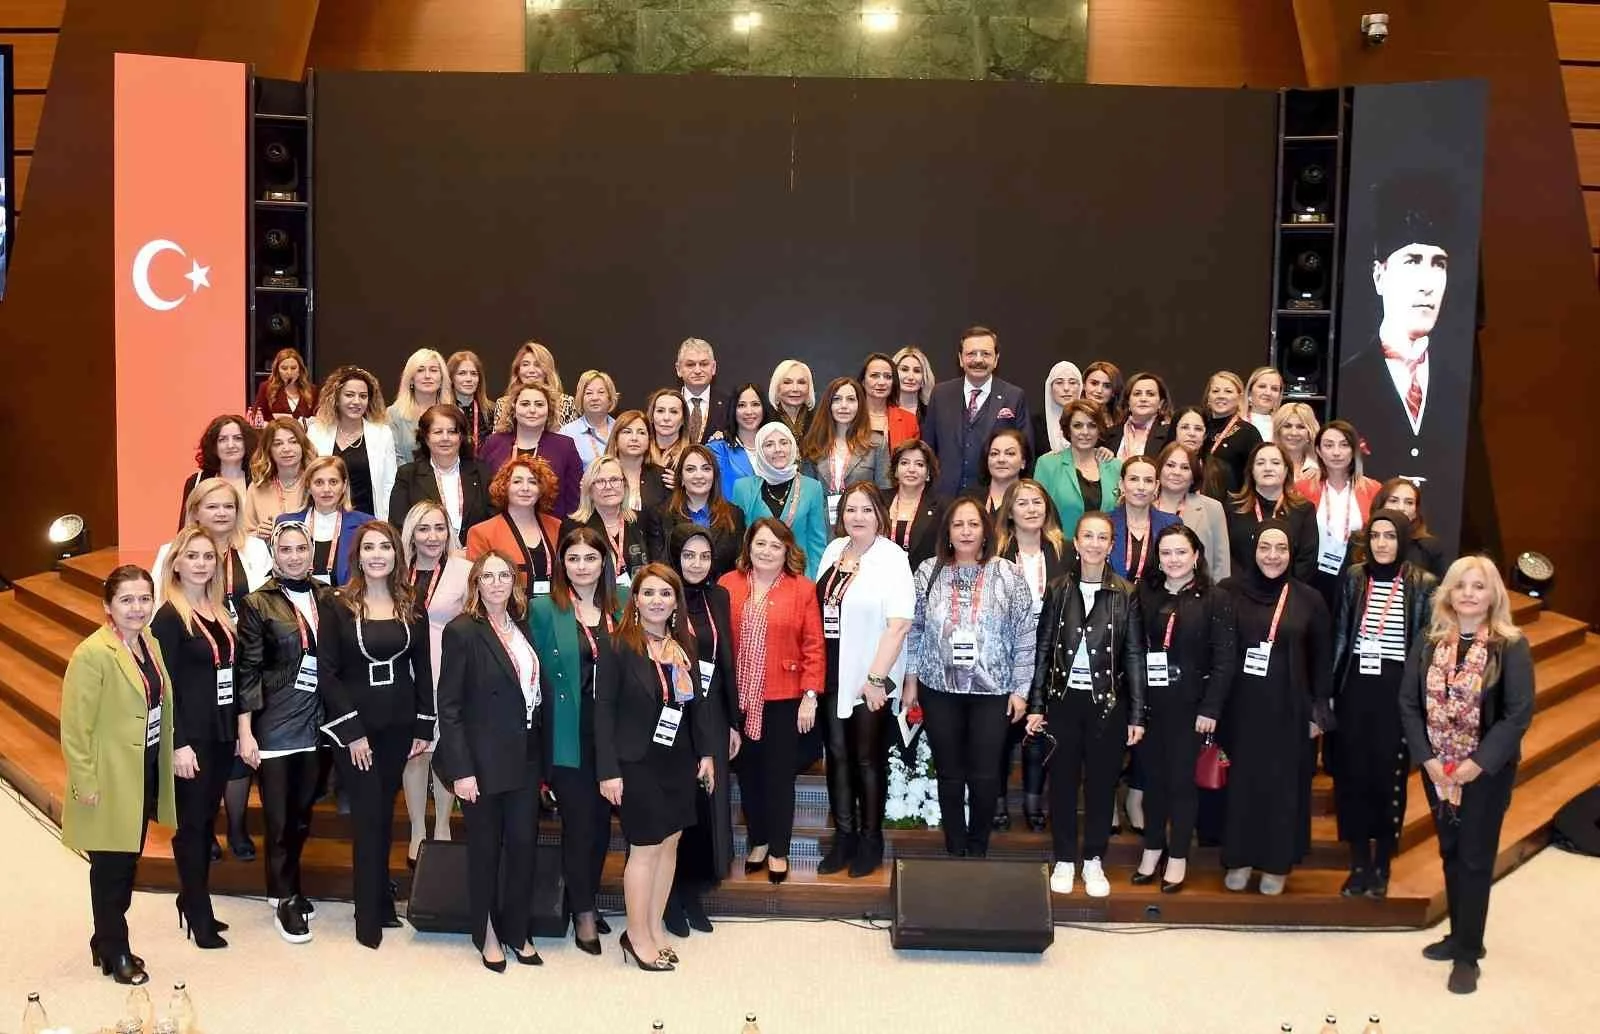 TOBB Başkanı Hisarcıklıoğlu: Aklın cinsiyeti olmaz başarının cinsiyeti olmaz